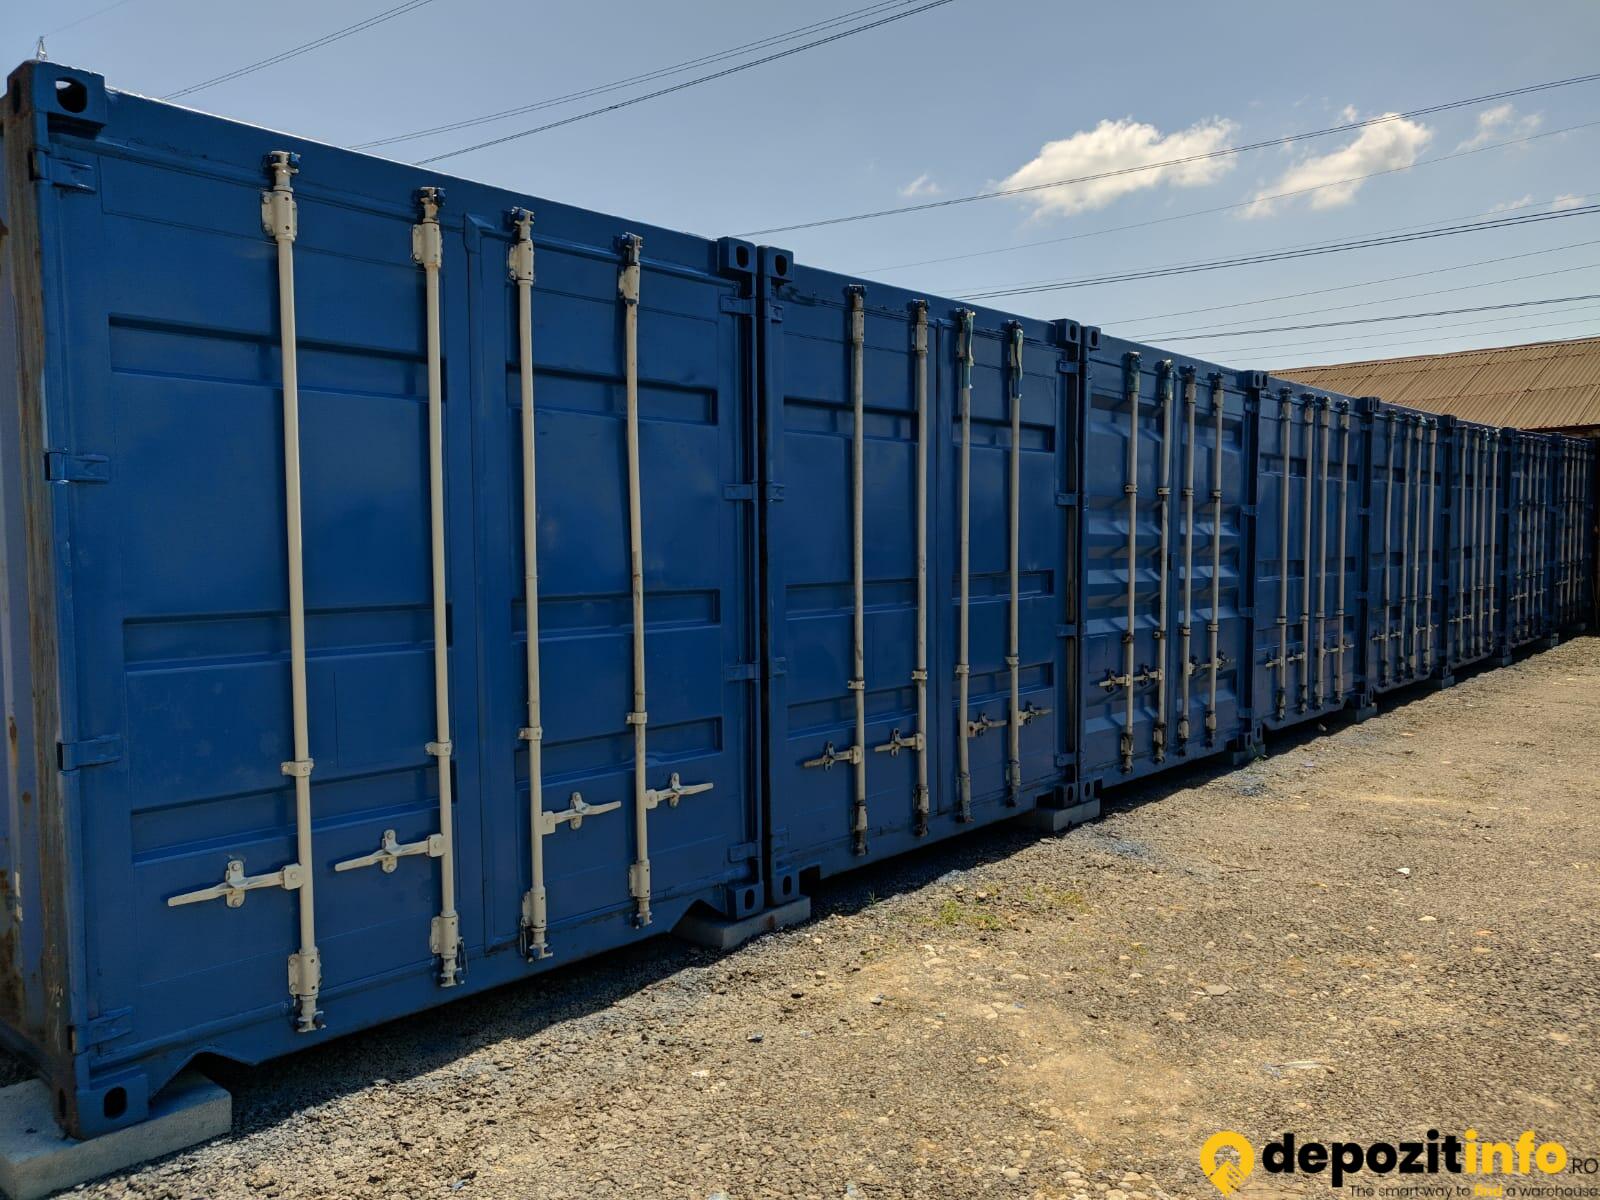 Depozite de în Depozit, Containere, in 030000 București, Splaiul Unirii